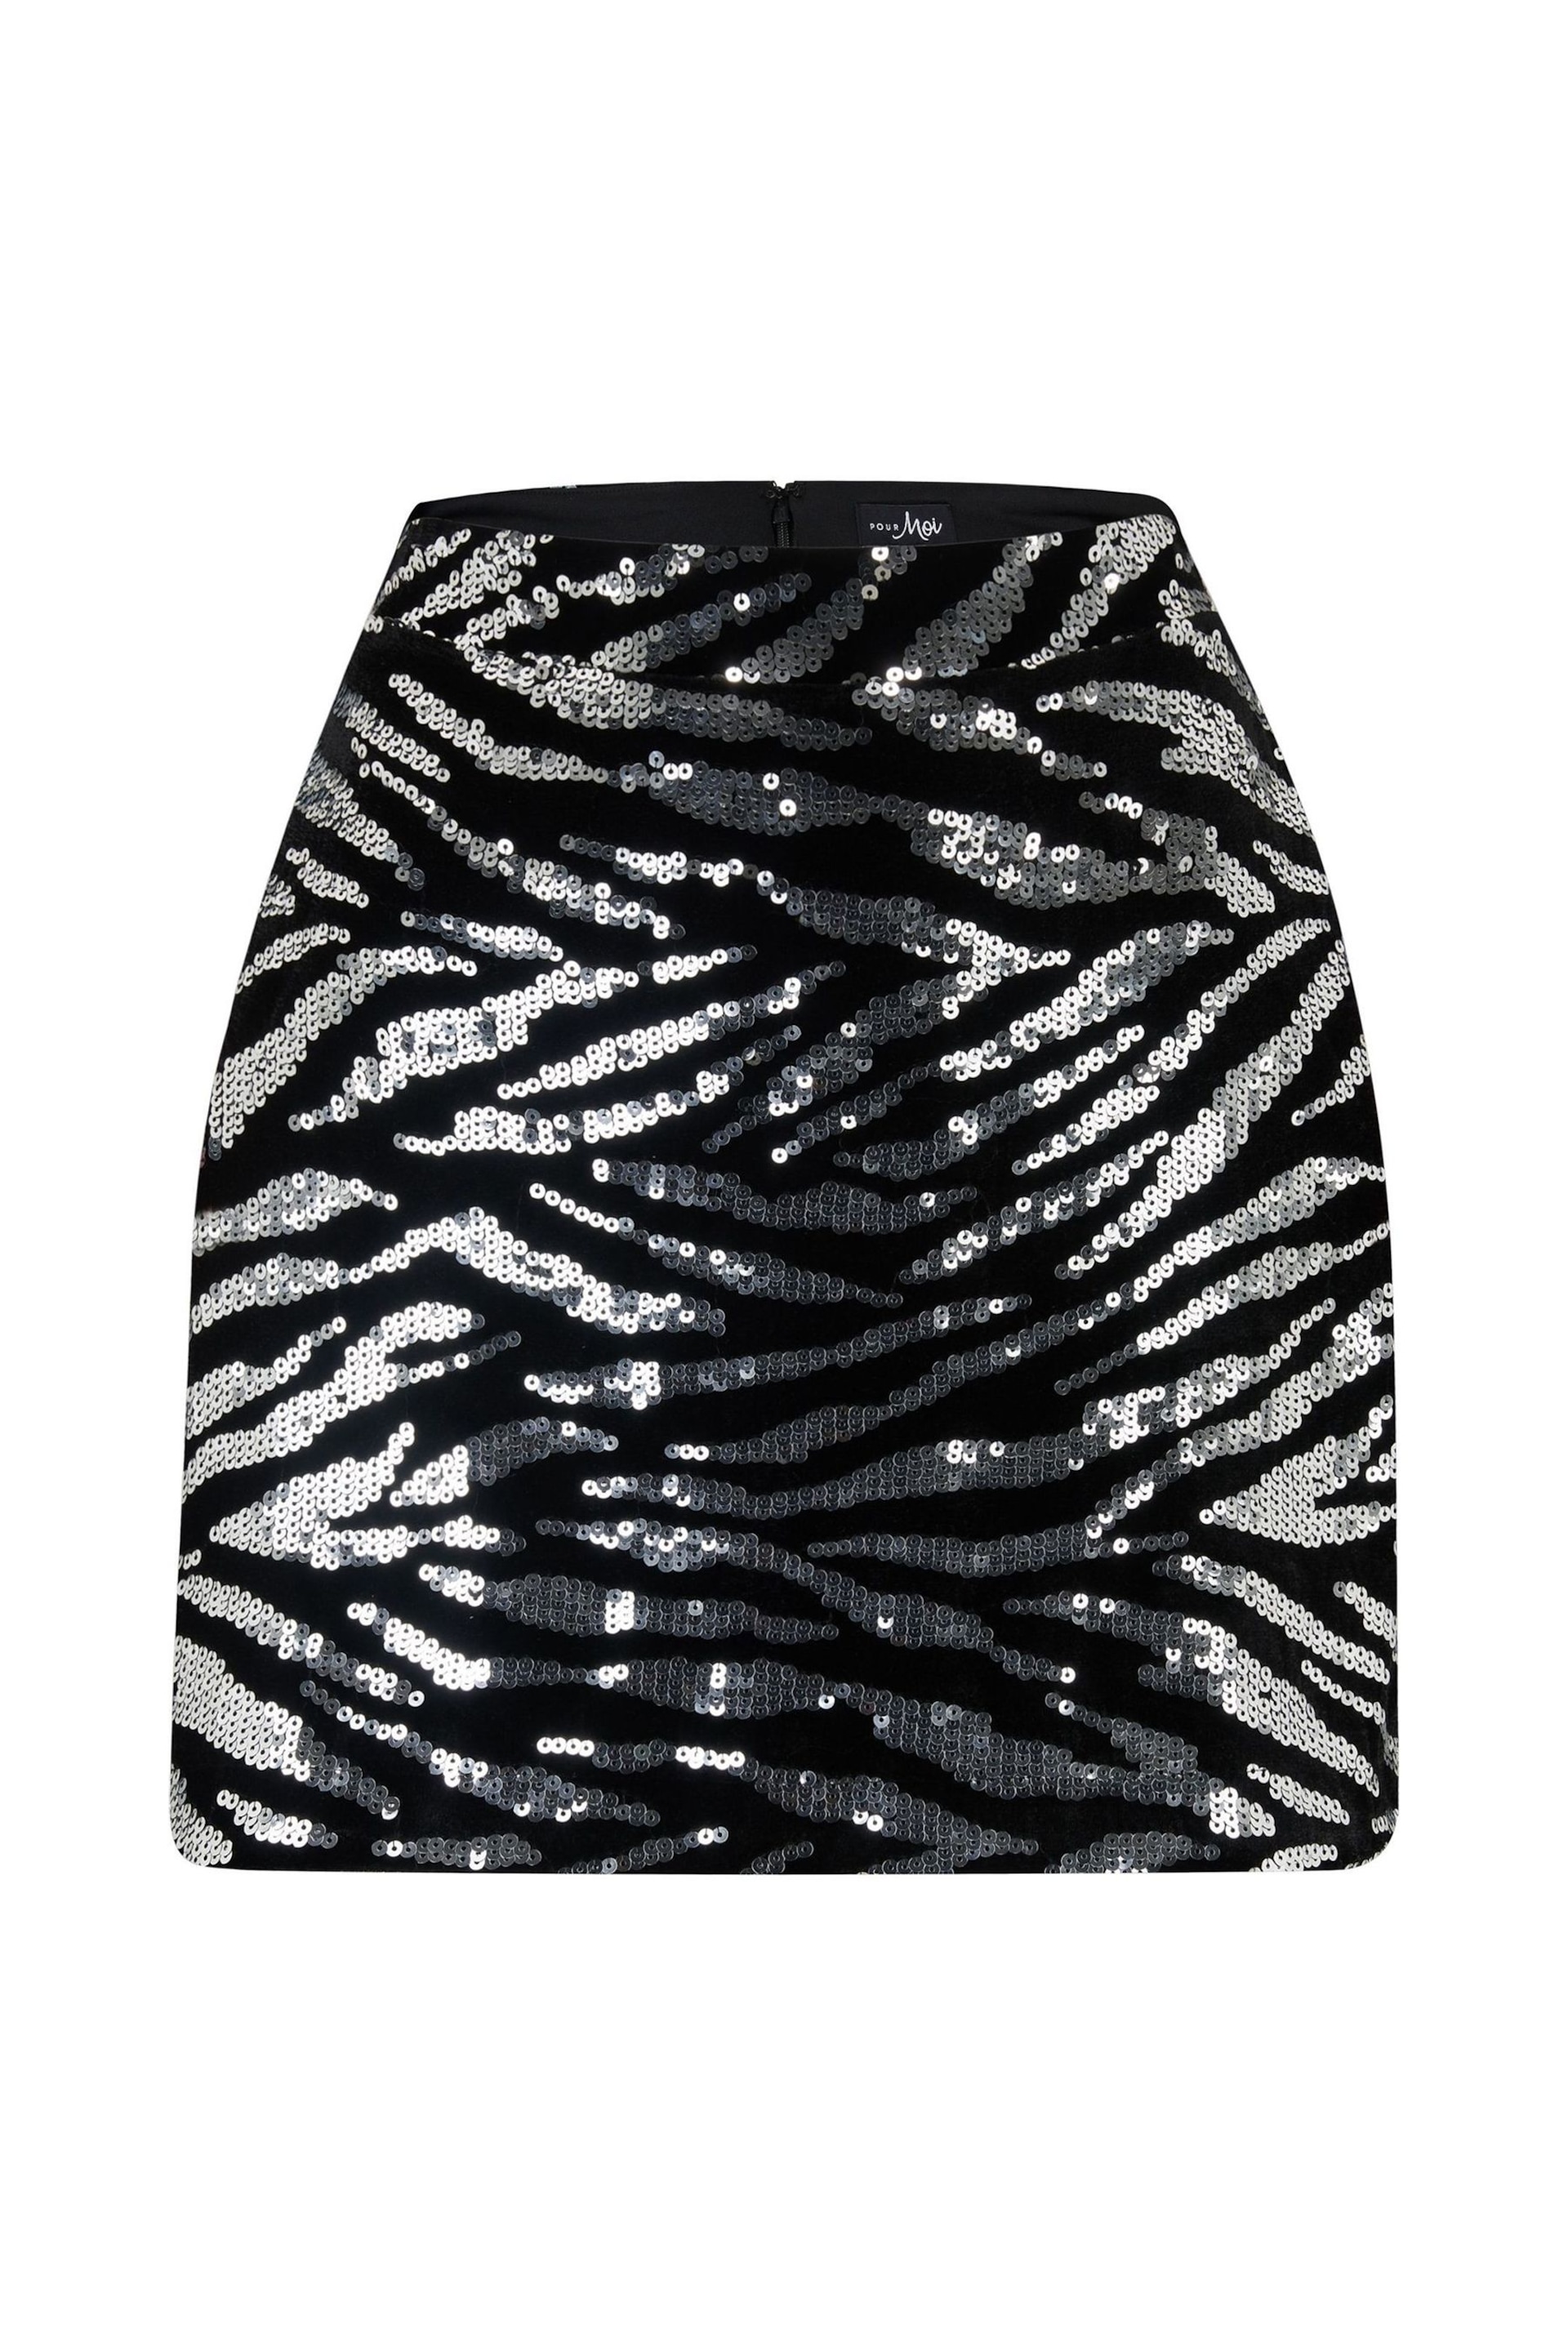 Pour Moi Black Zebra Selena Velvet Sequin Mini Skirt - Image 3 of 4